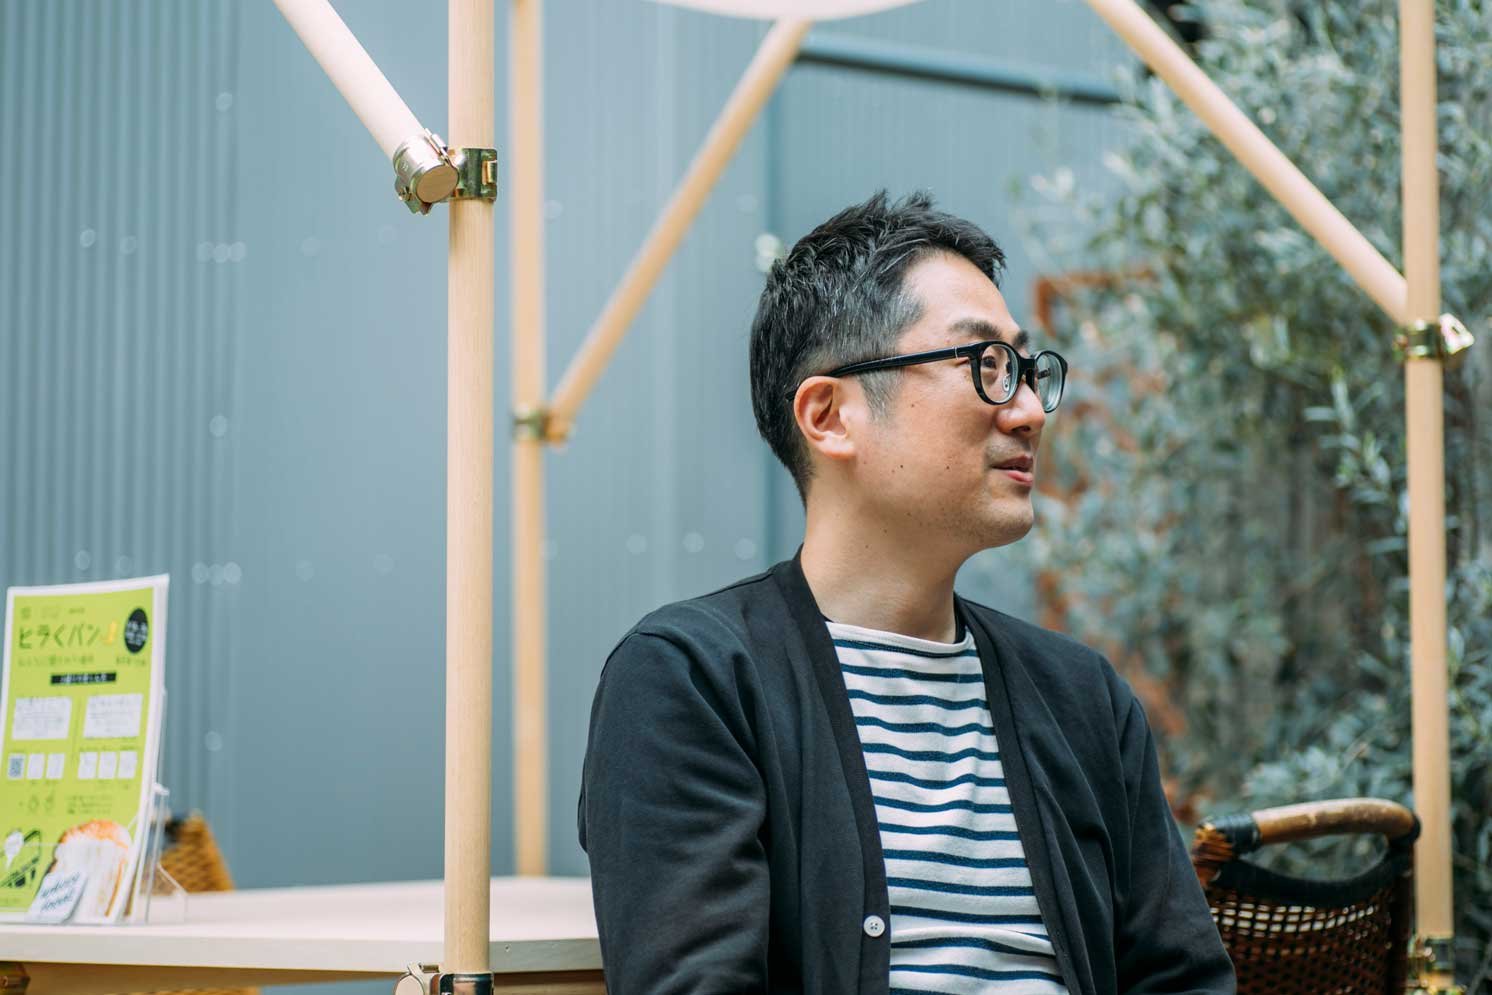 中田氏 | Make New Magazine「未来の定番」をつくるために、パナソニックのリアルな姿を伝えるメディア